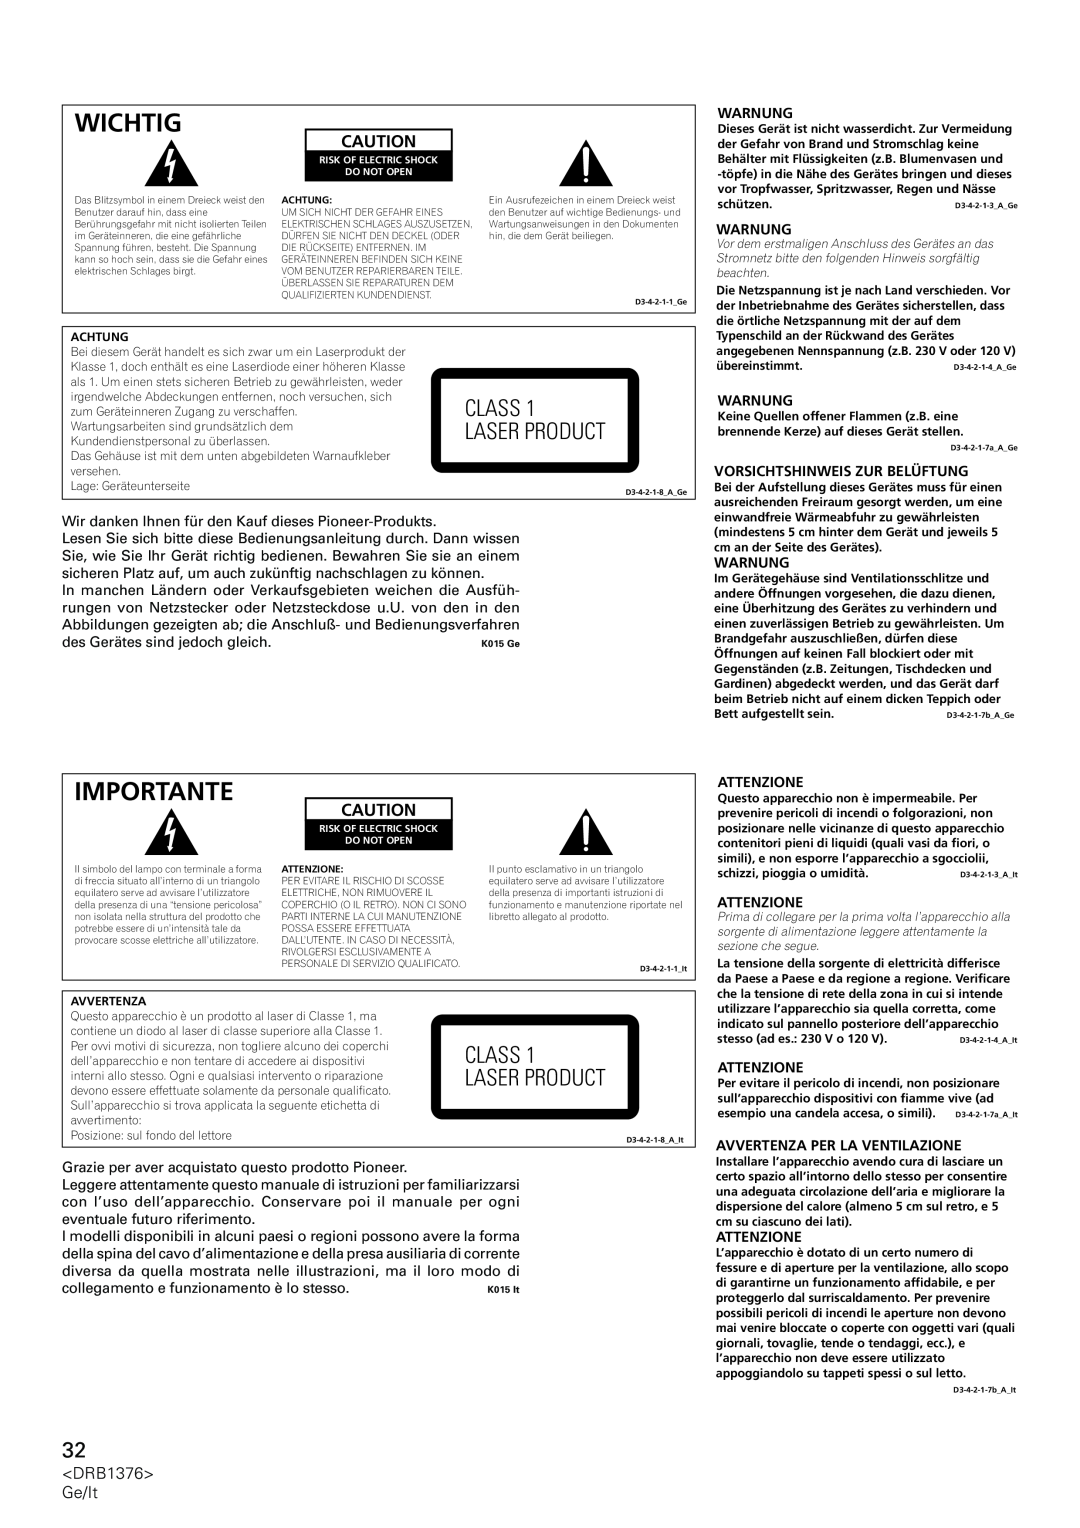 Pioneer CDJ-200 manual Wichtig, Importante, Class Laser Product, Warnung, Vorsichtshinweis Zur Belüftung, Attenzione 